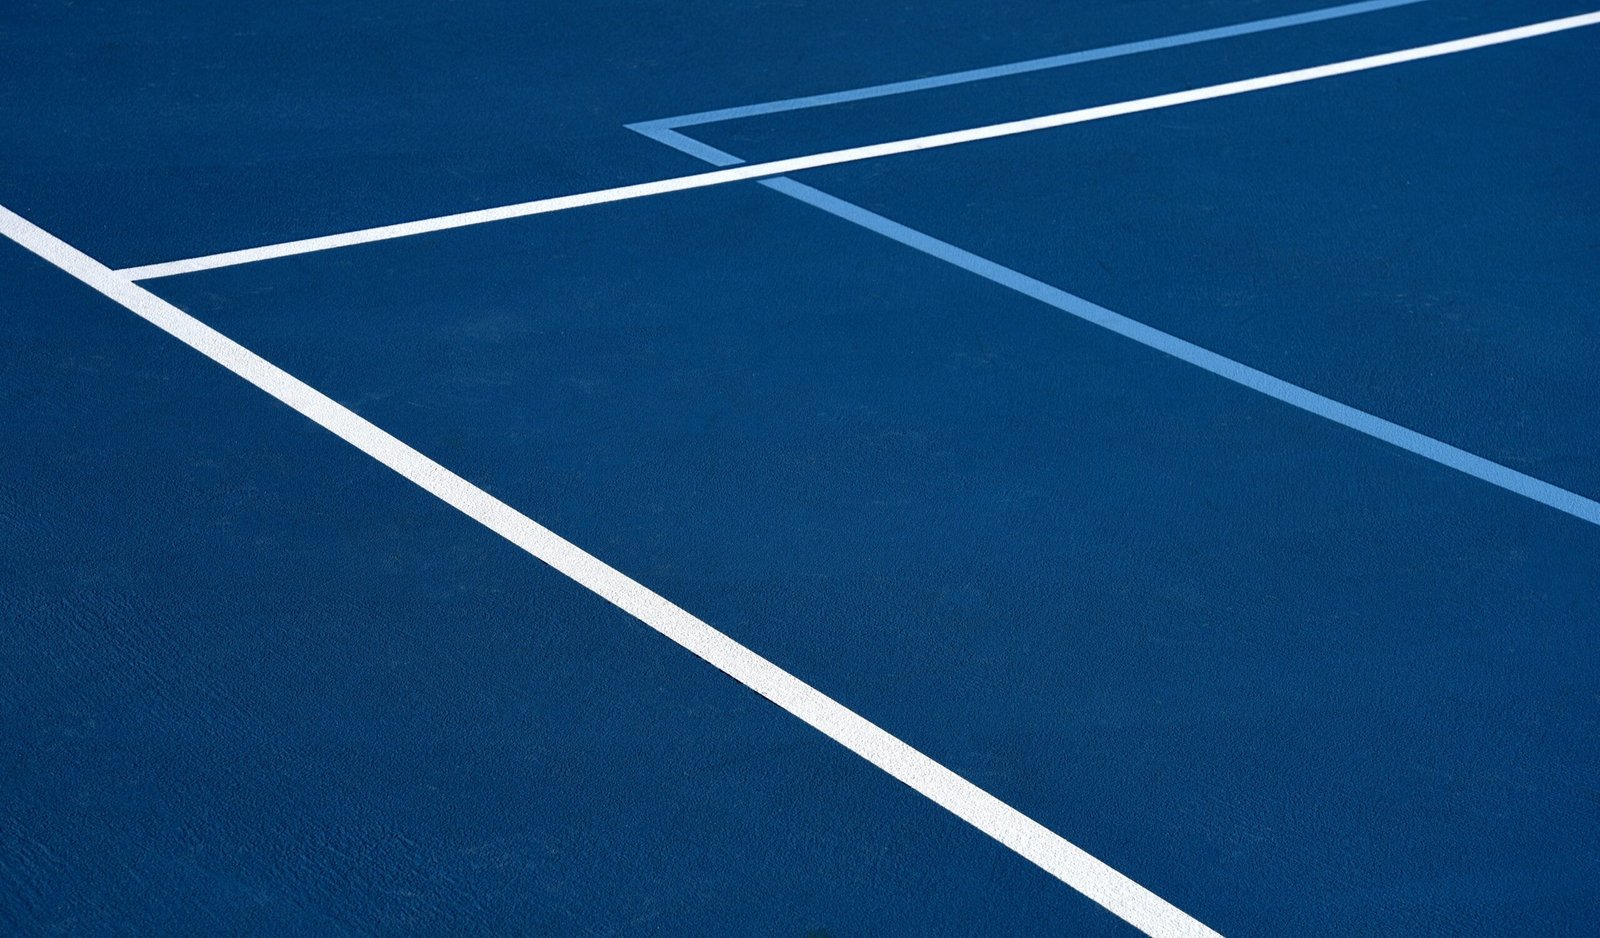 découvrez tout sur le tennis, des règles et techniques aux dernières actualités et événements du monde du tennis.